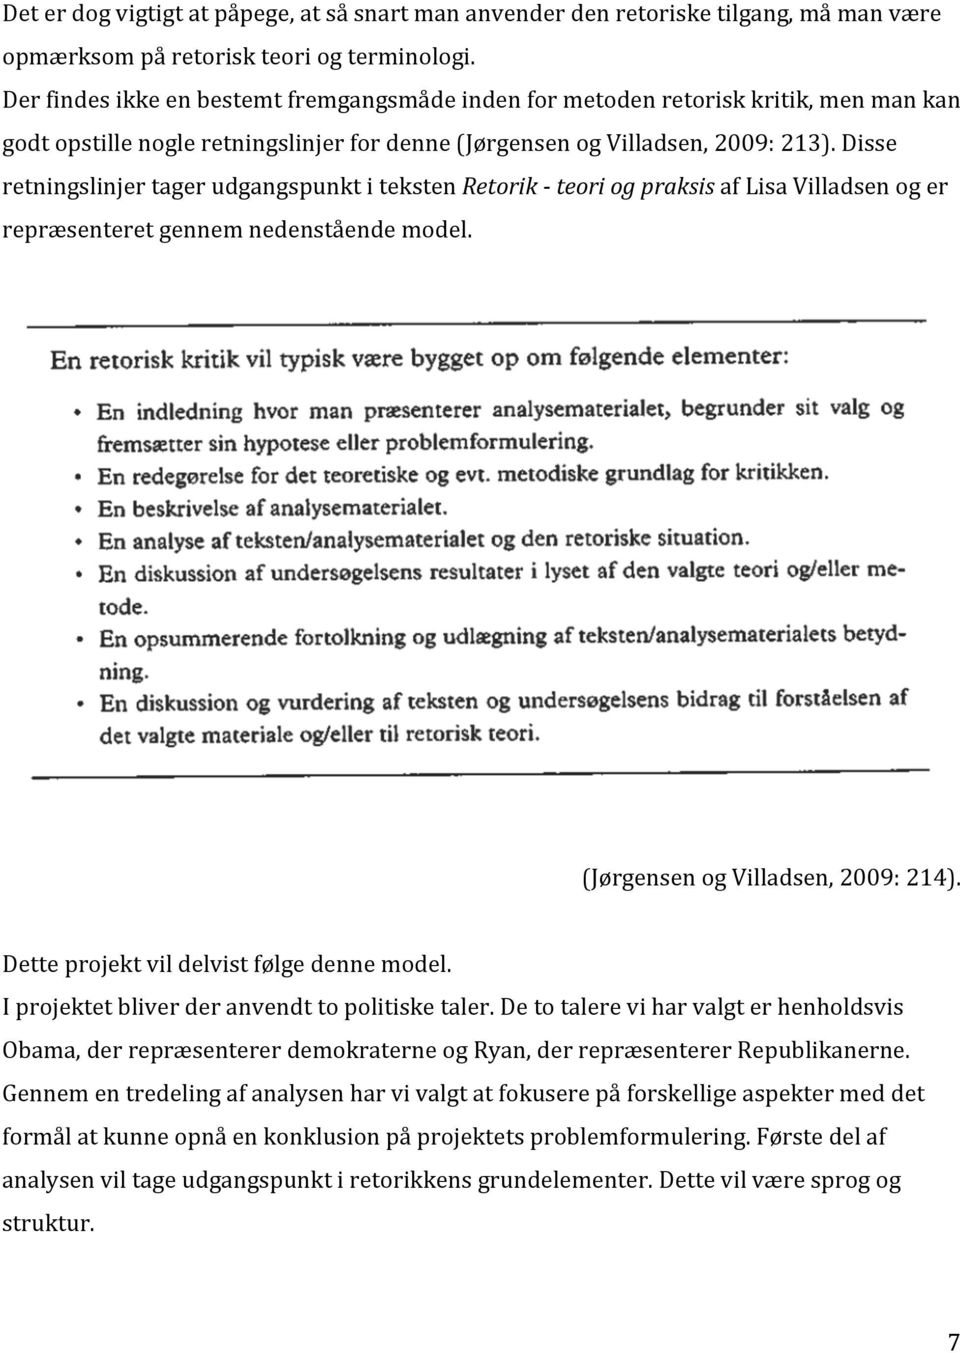 Disse retningslinjer tager udgangspunkt i teksten Retorik - teori og praksis af Lisa Villadsen og er repræsenteret gennem nedenstående model. (Jørgensen og Villadsen, 2009: 214).